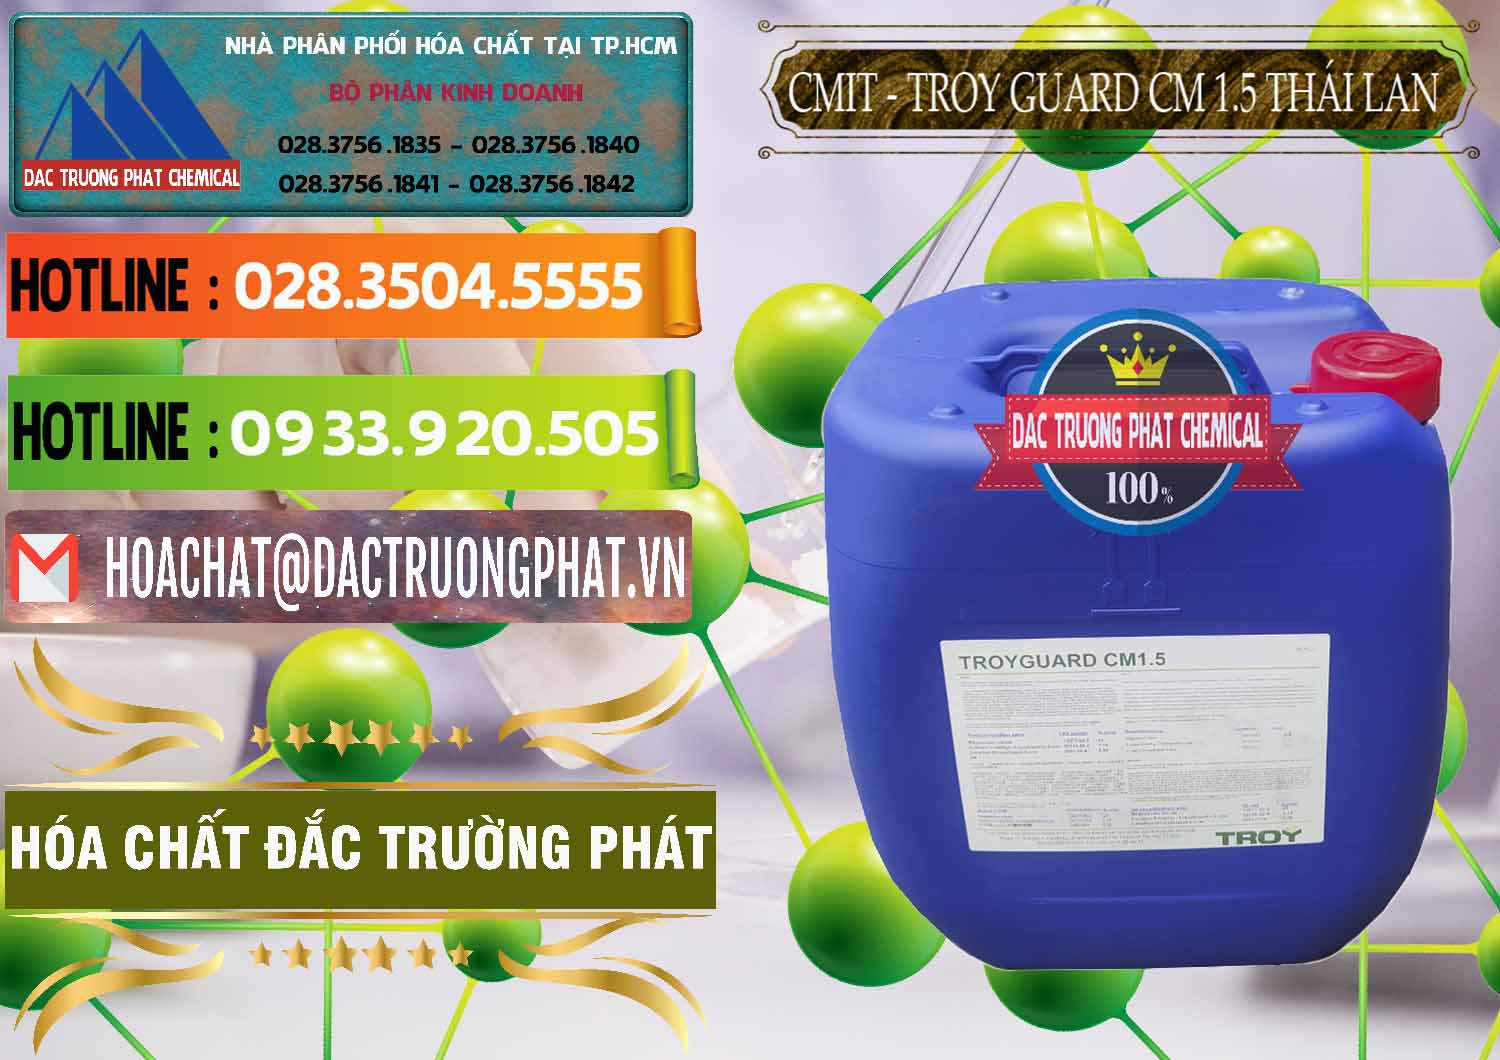 Cty chuyên phân phối và bán Chất Bảo Quản CMIT Thái Lan Thailand - 0326 - Nơi chuyên bán và phân phối hóa chất tại TP.HCM - cungcaphoachat.com.vn